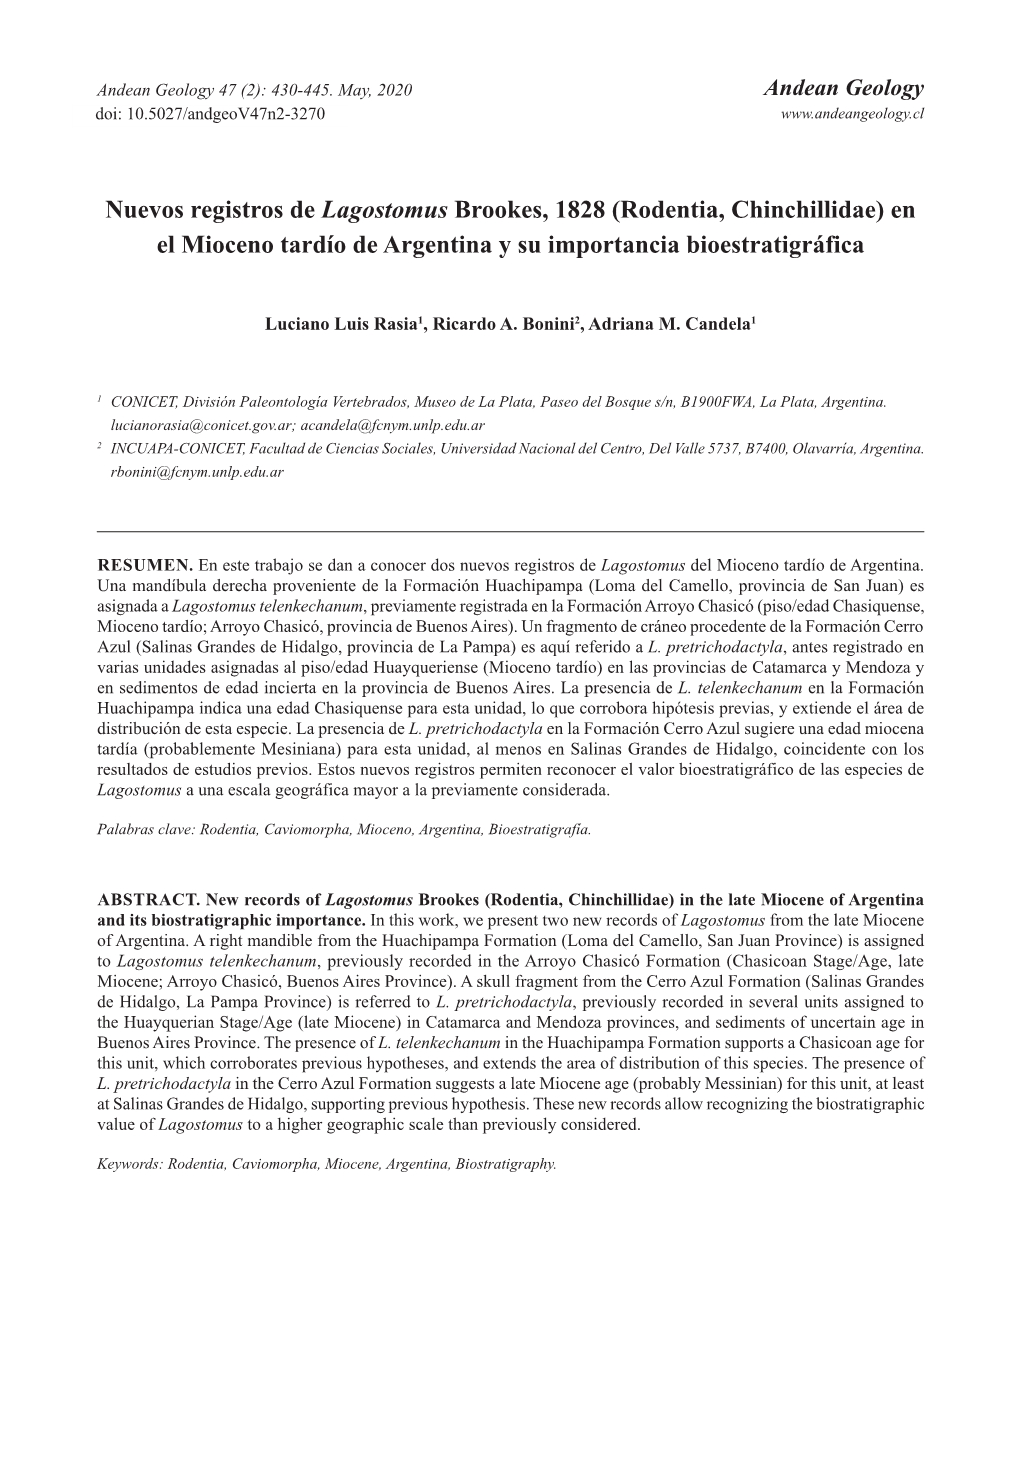 Rodentia, Chinchillidae) En El Mioceno Tardío De Argentina Y Su Importancia Bioestratigráfica